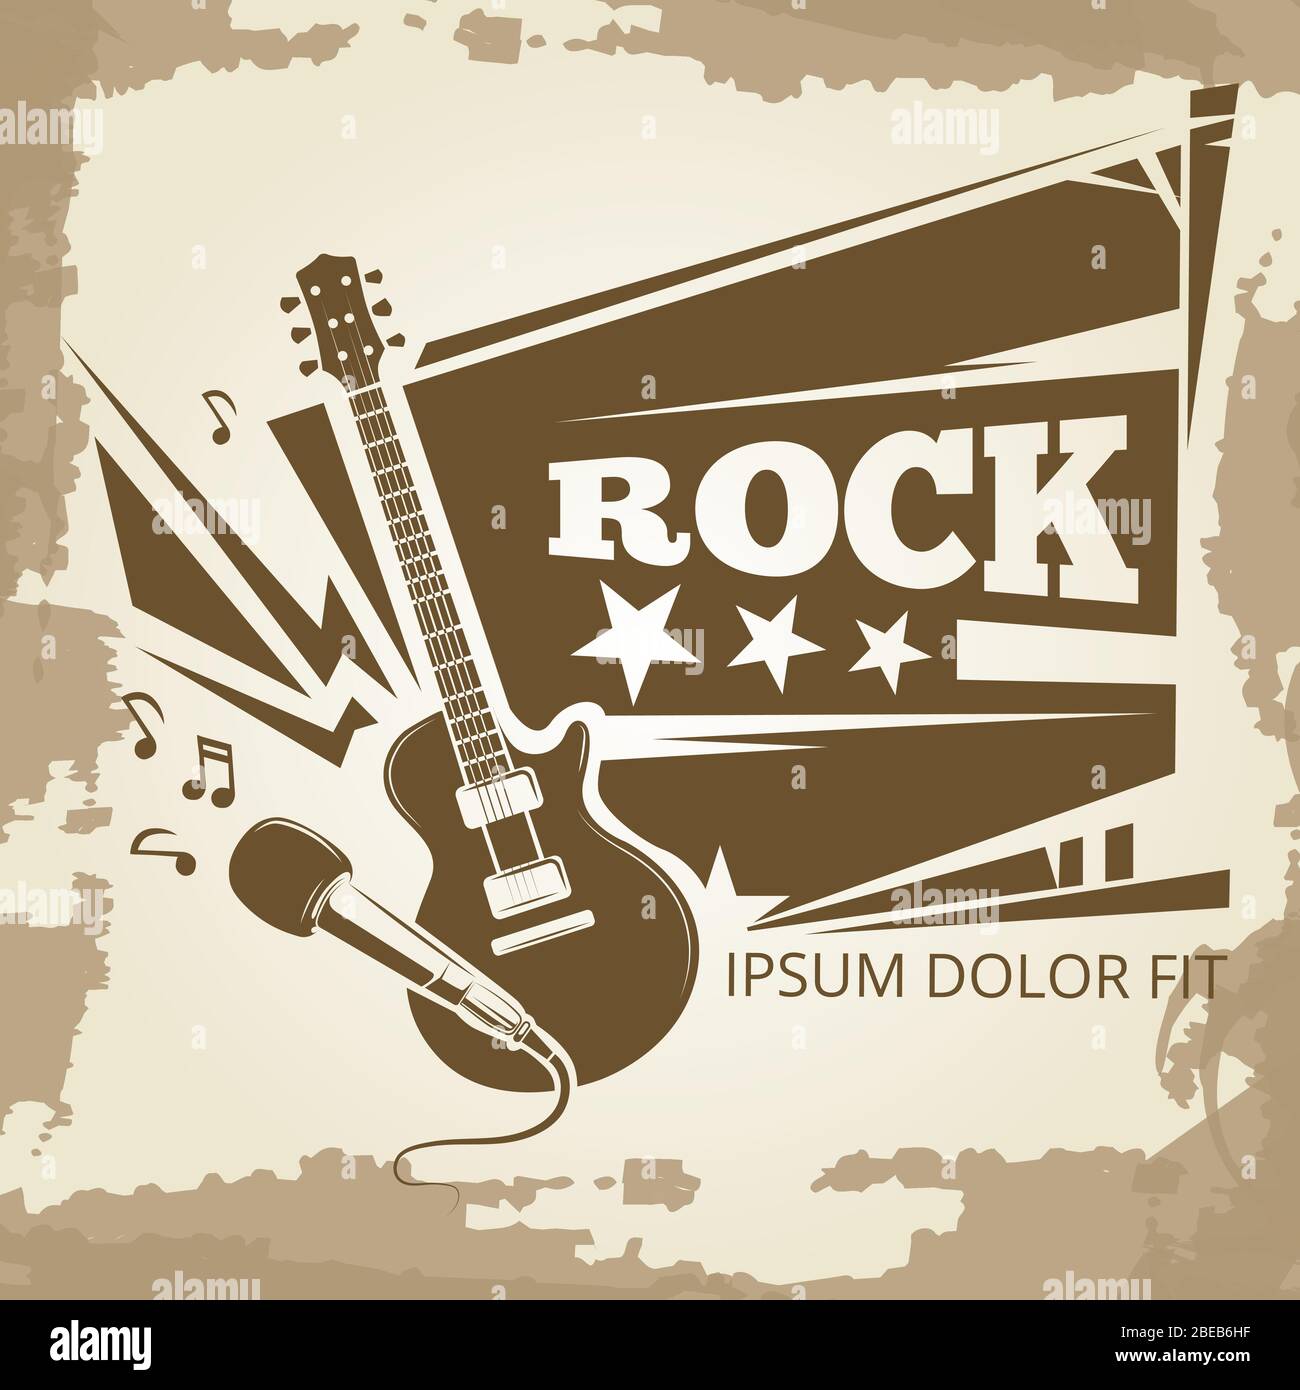 Rock Musik Vintage Emblem Design. Grunge Banner für Rock-Event. Vektorgrafik Stock Vektor